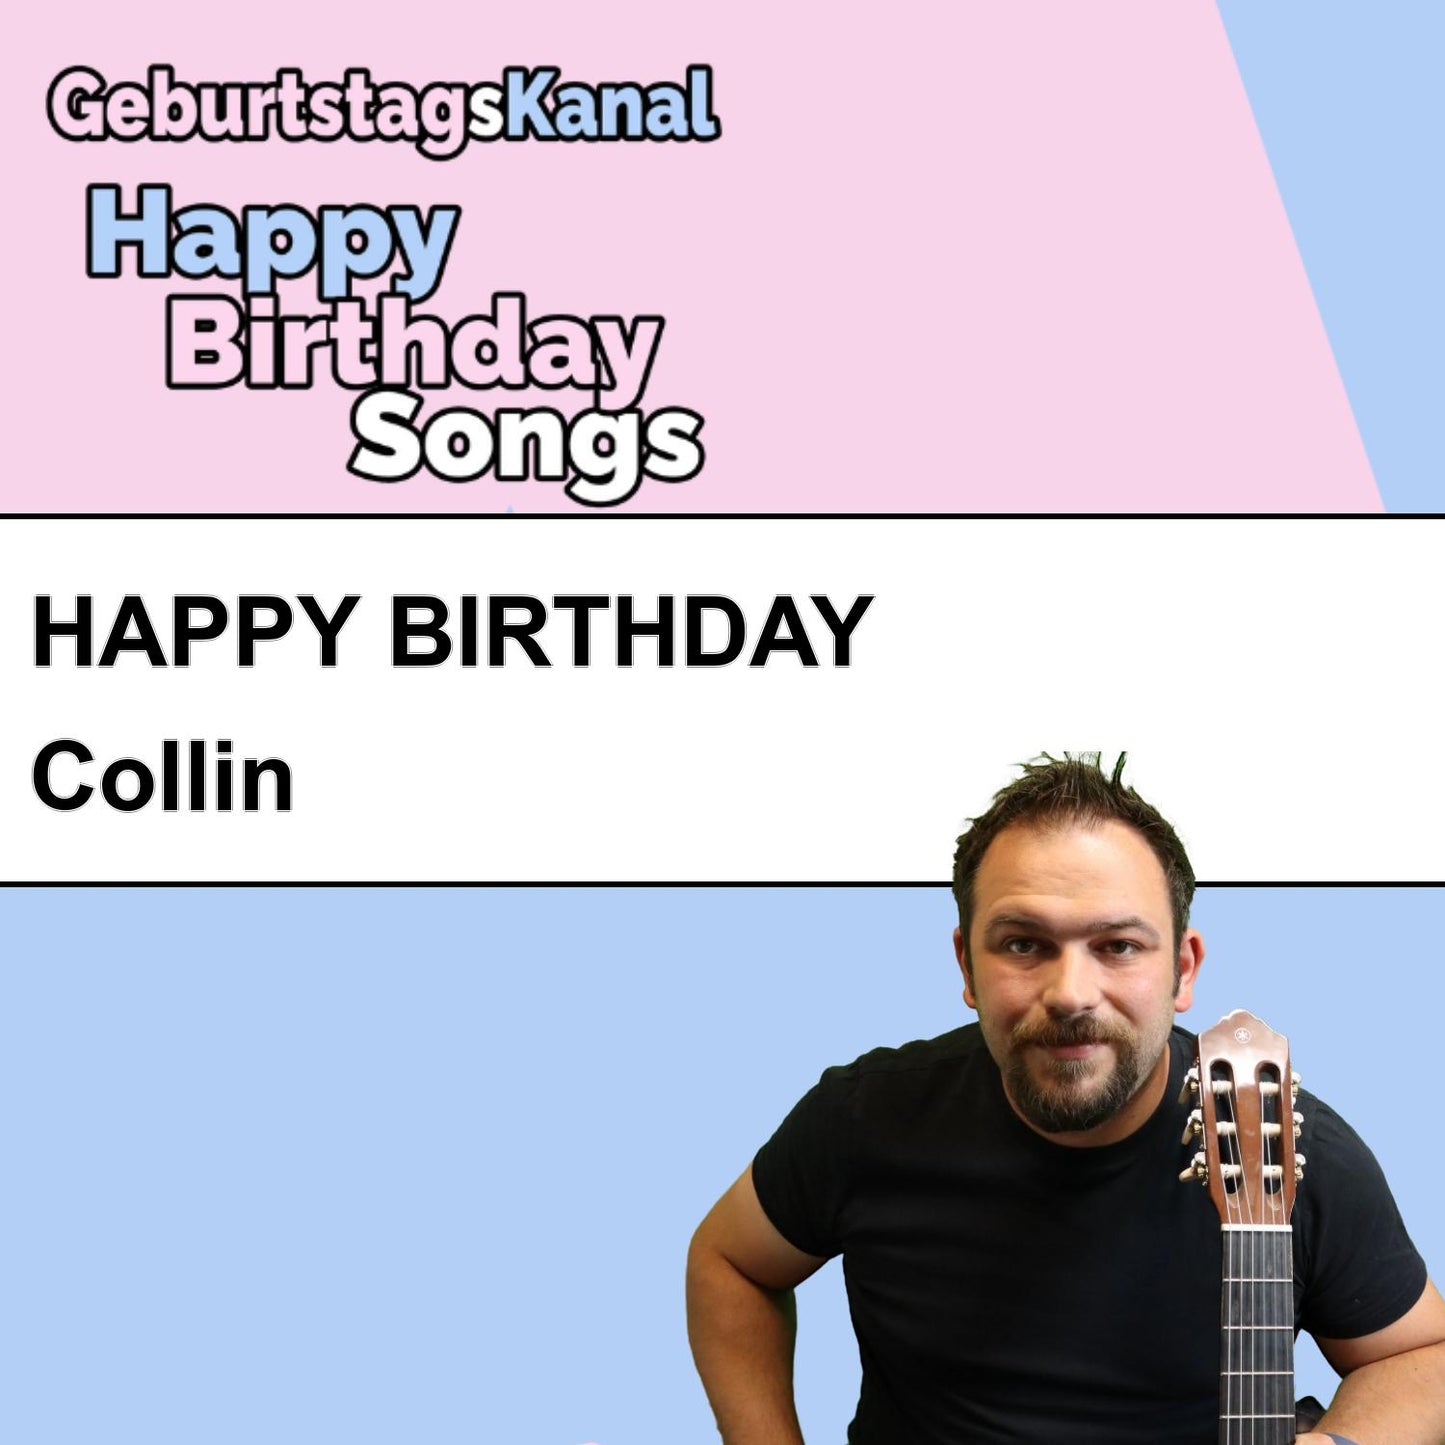 Produktbild Happy Birthday to you Collin mit Wunschgrußbotschaft